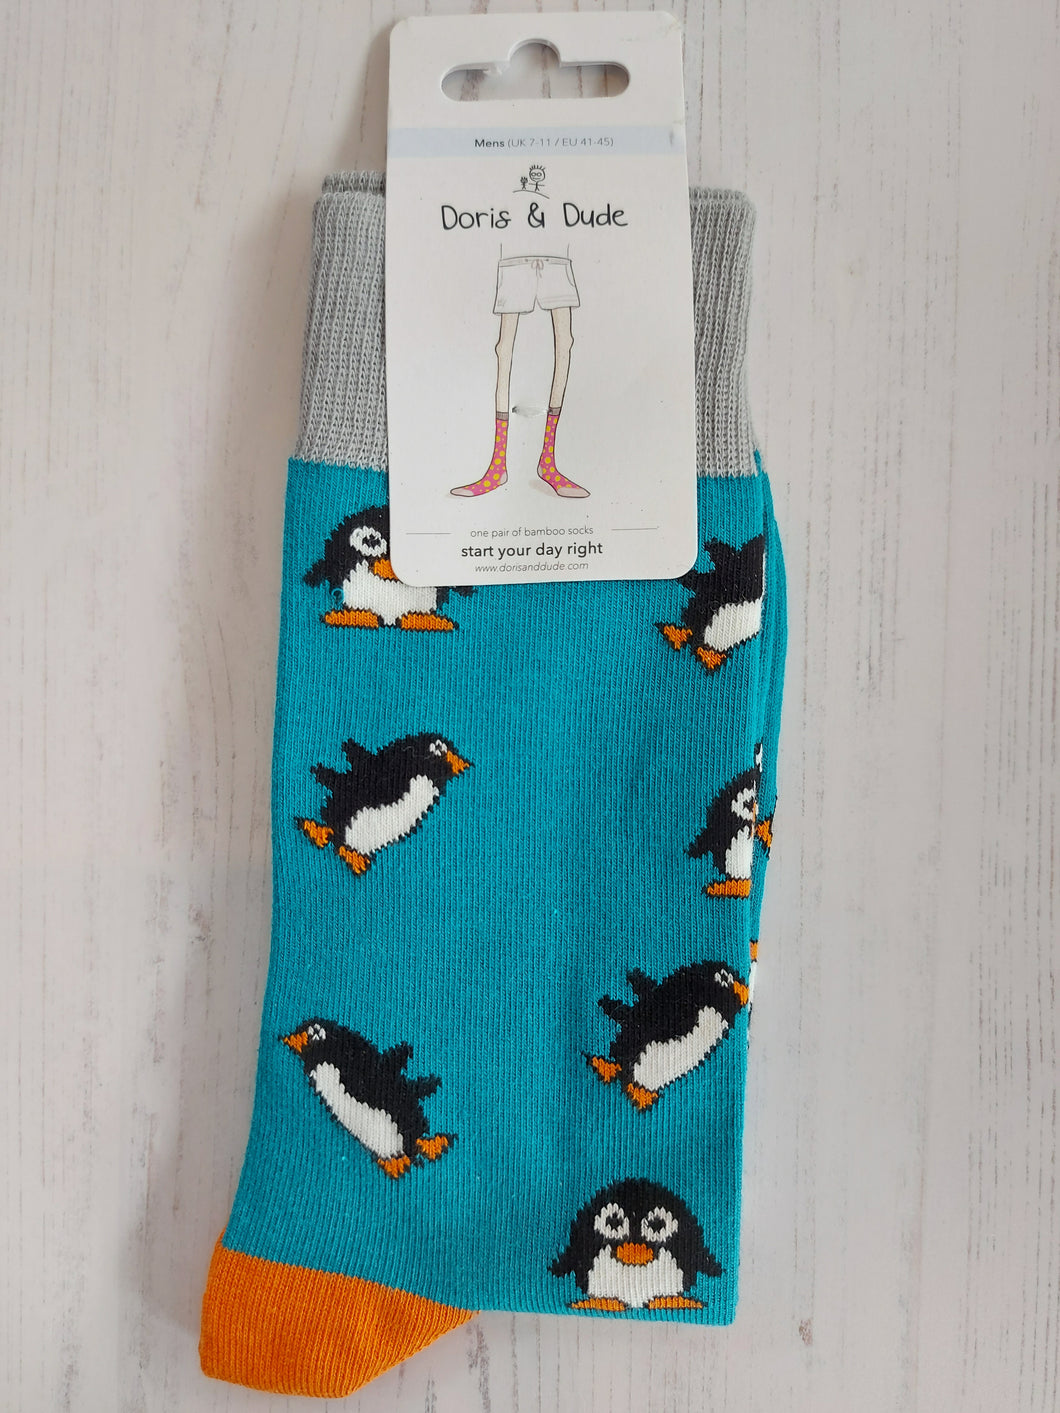 Teal Penguin Socks (size 7-11)